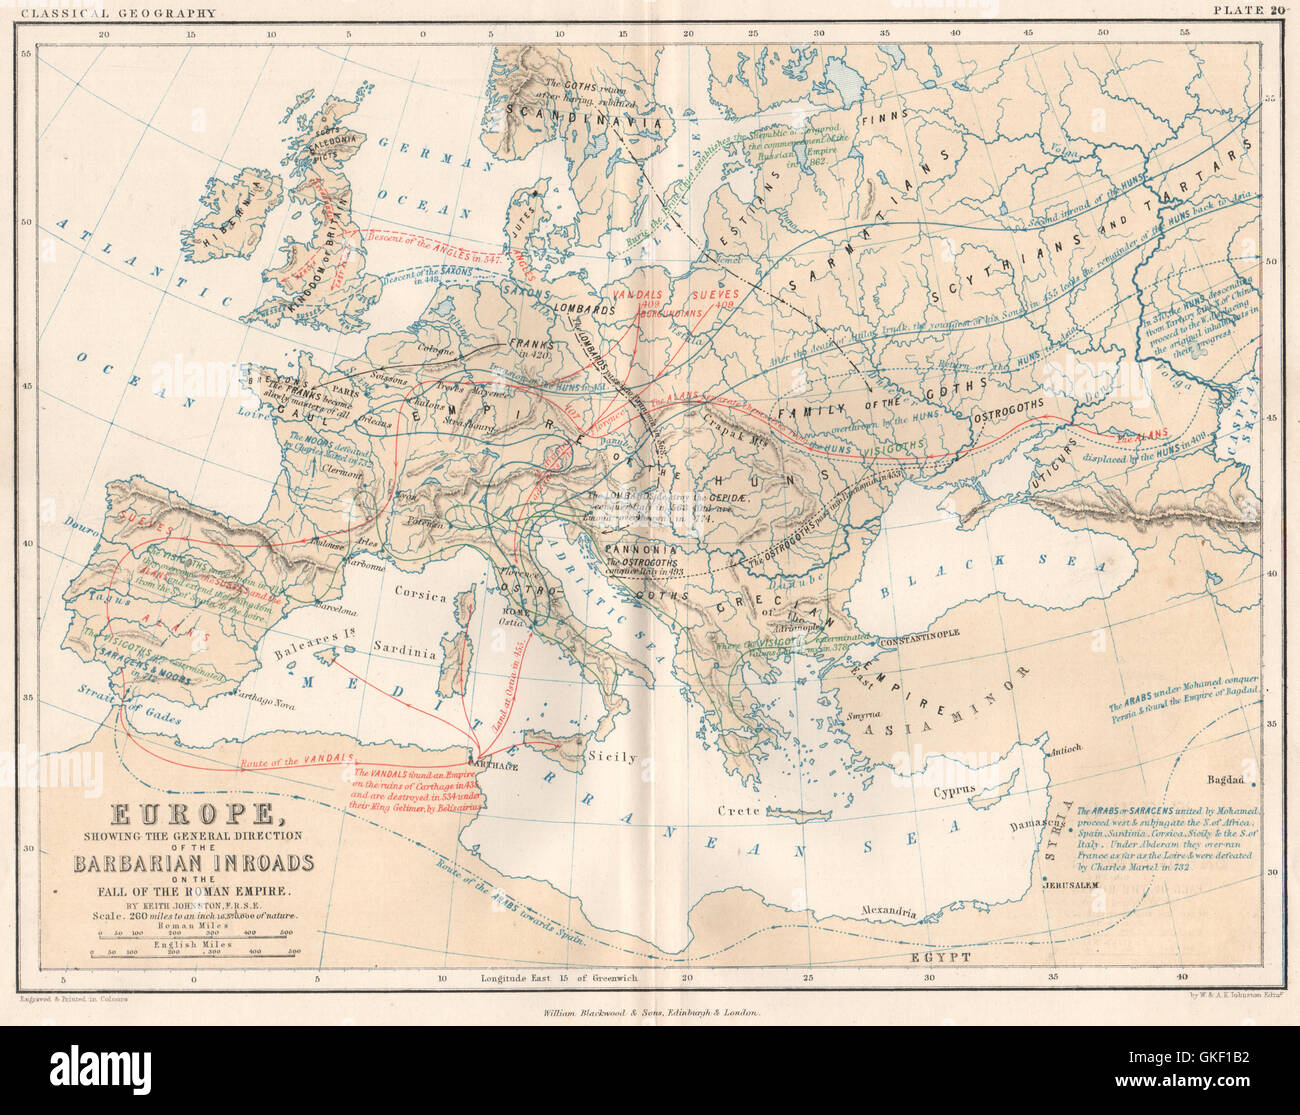 Barbarian Invasion Europas nach dem Sturz des römischen Reiches. JOHNSTON, 1855-Karte Stockfoto